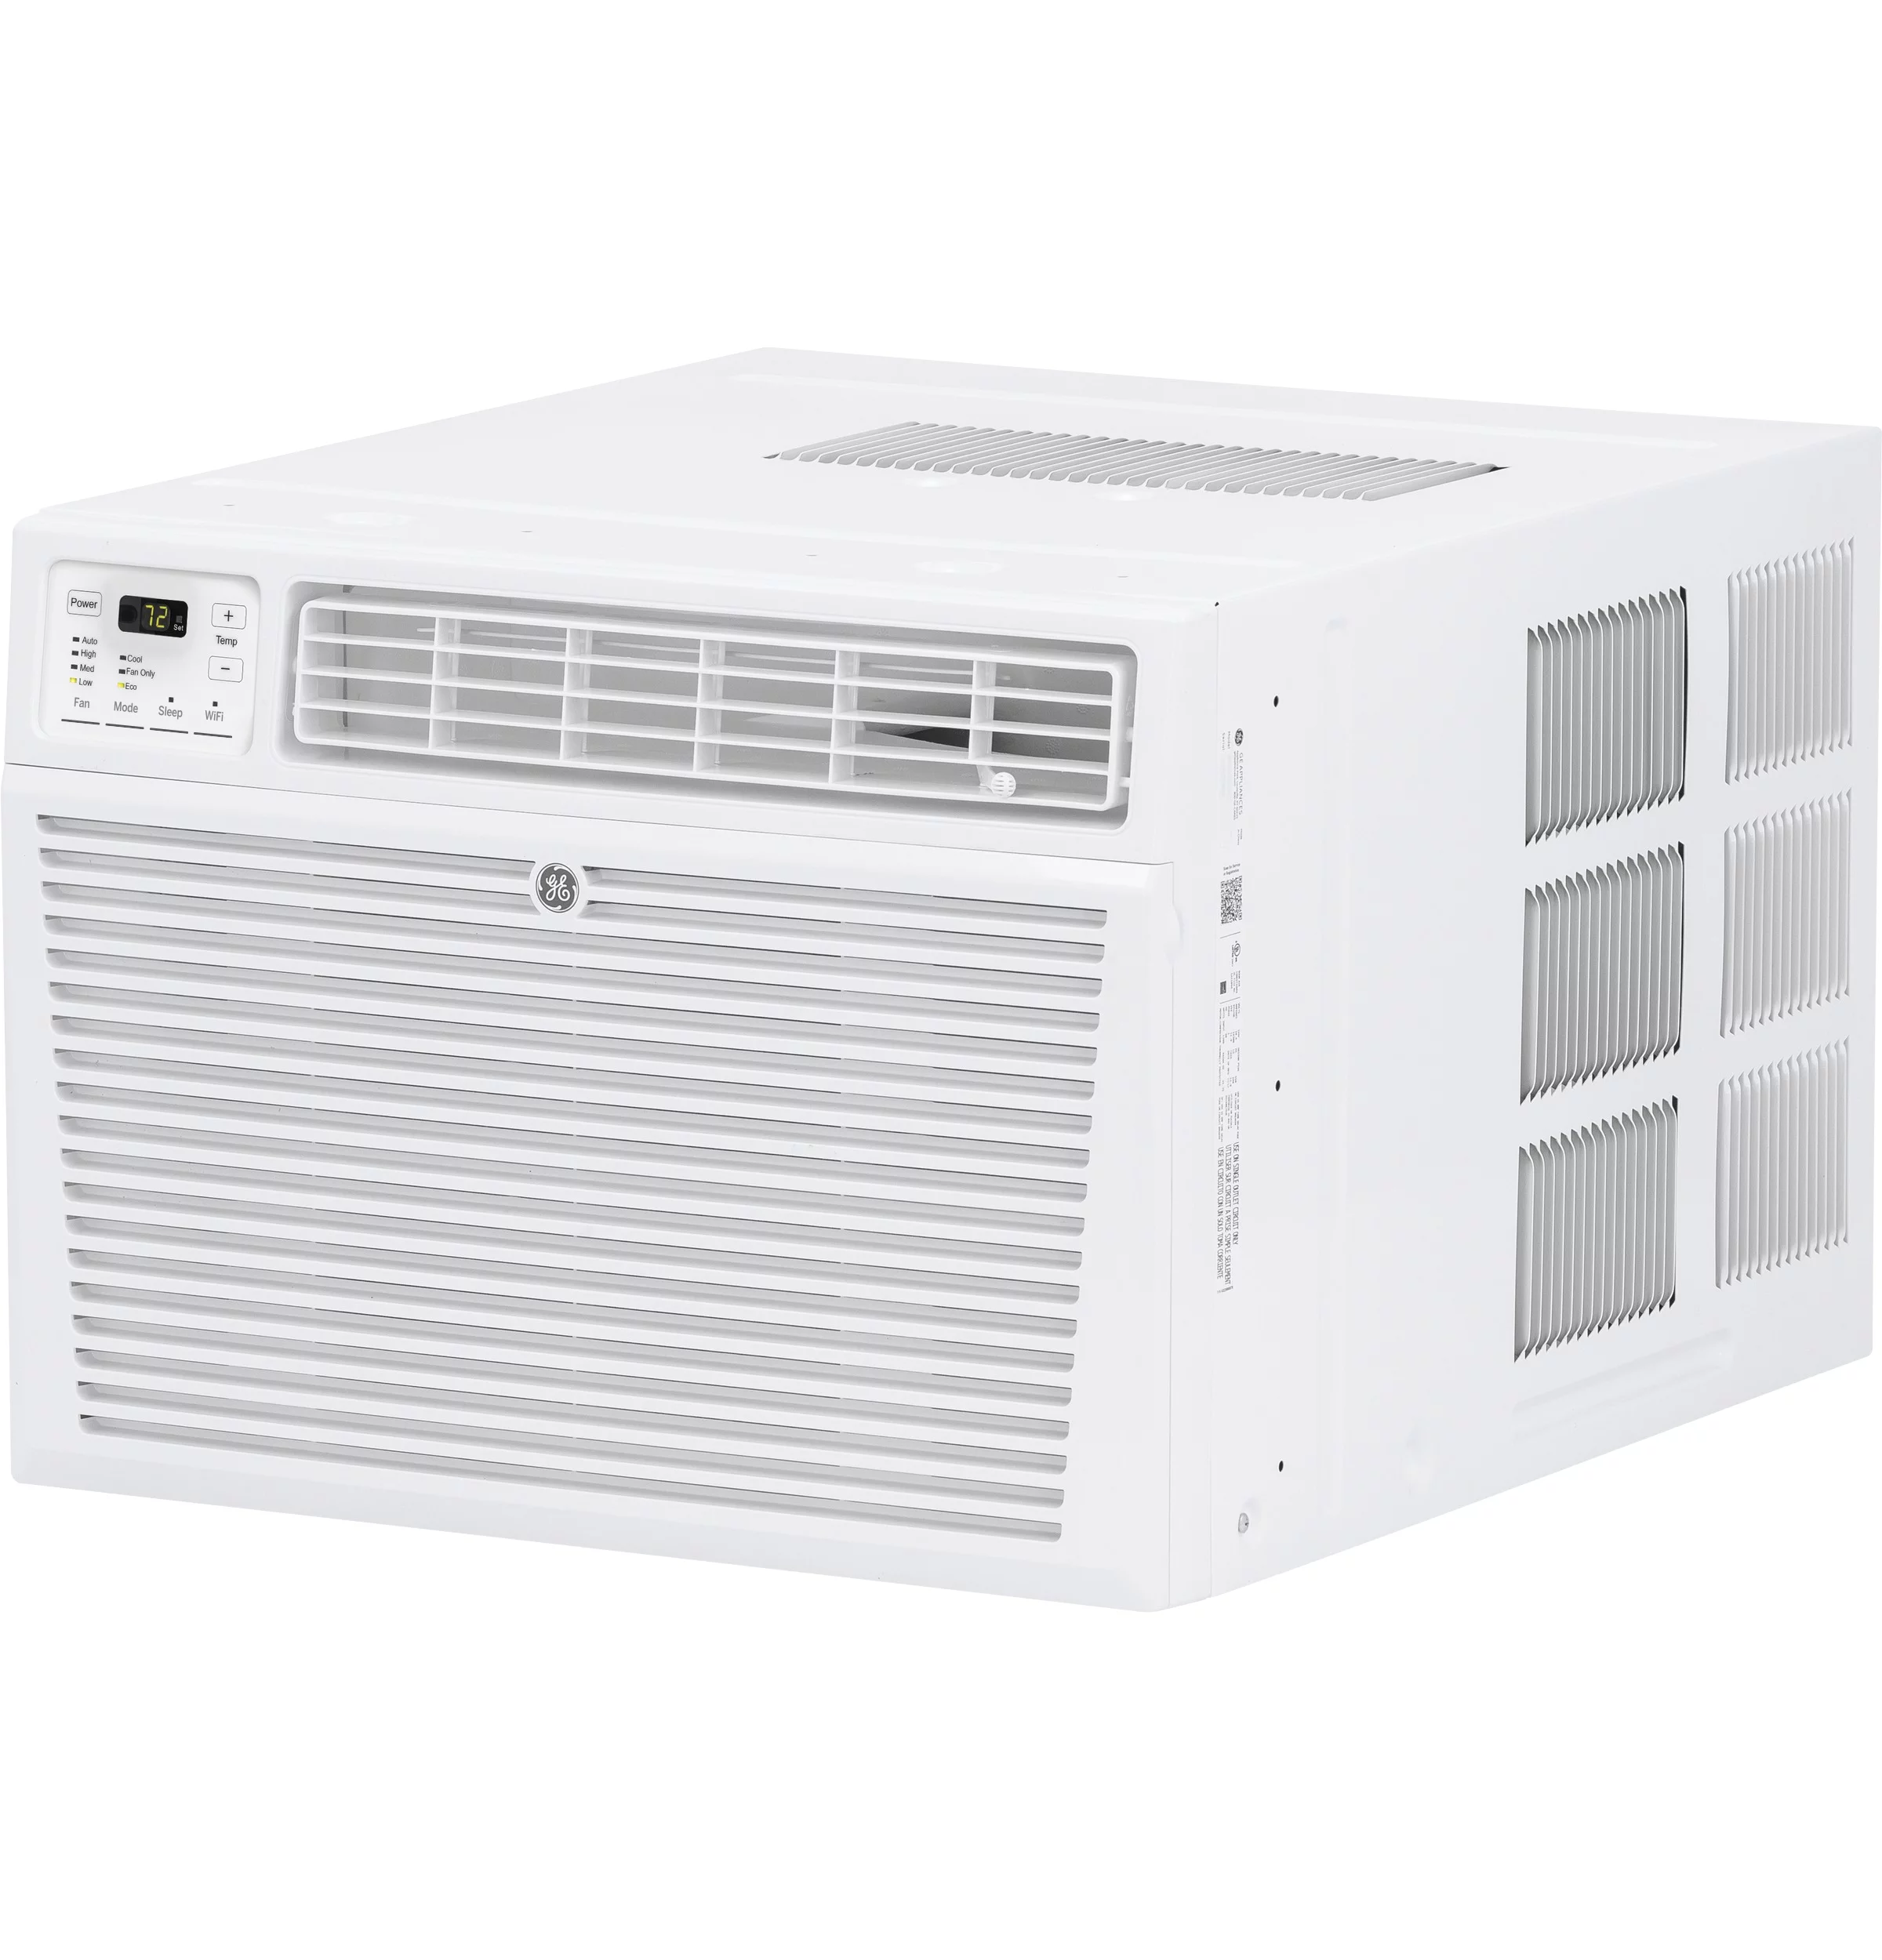 GE 18,000 BTU 230-Volt Smart Window Air Conditioner with Remote, AEG18DZ, White